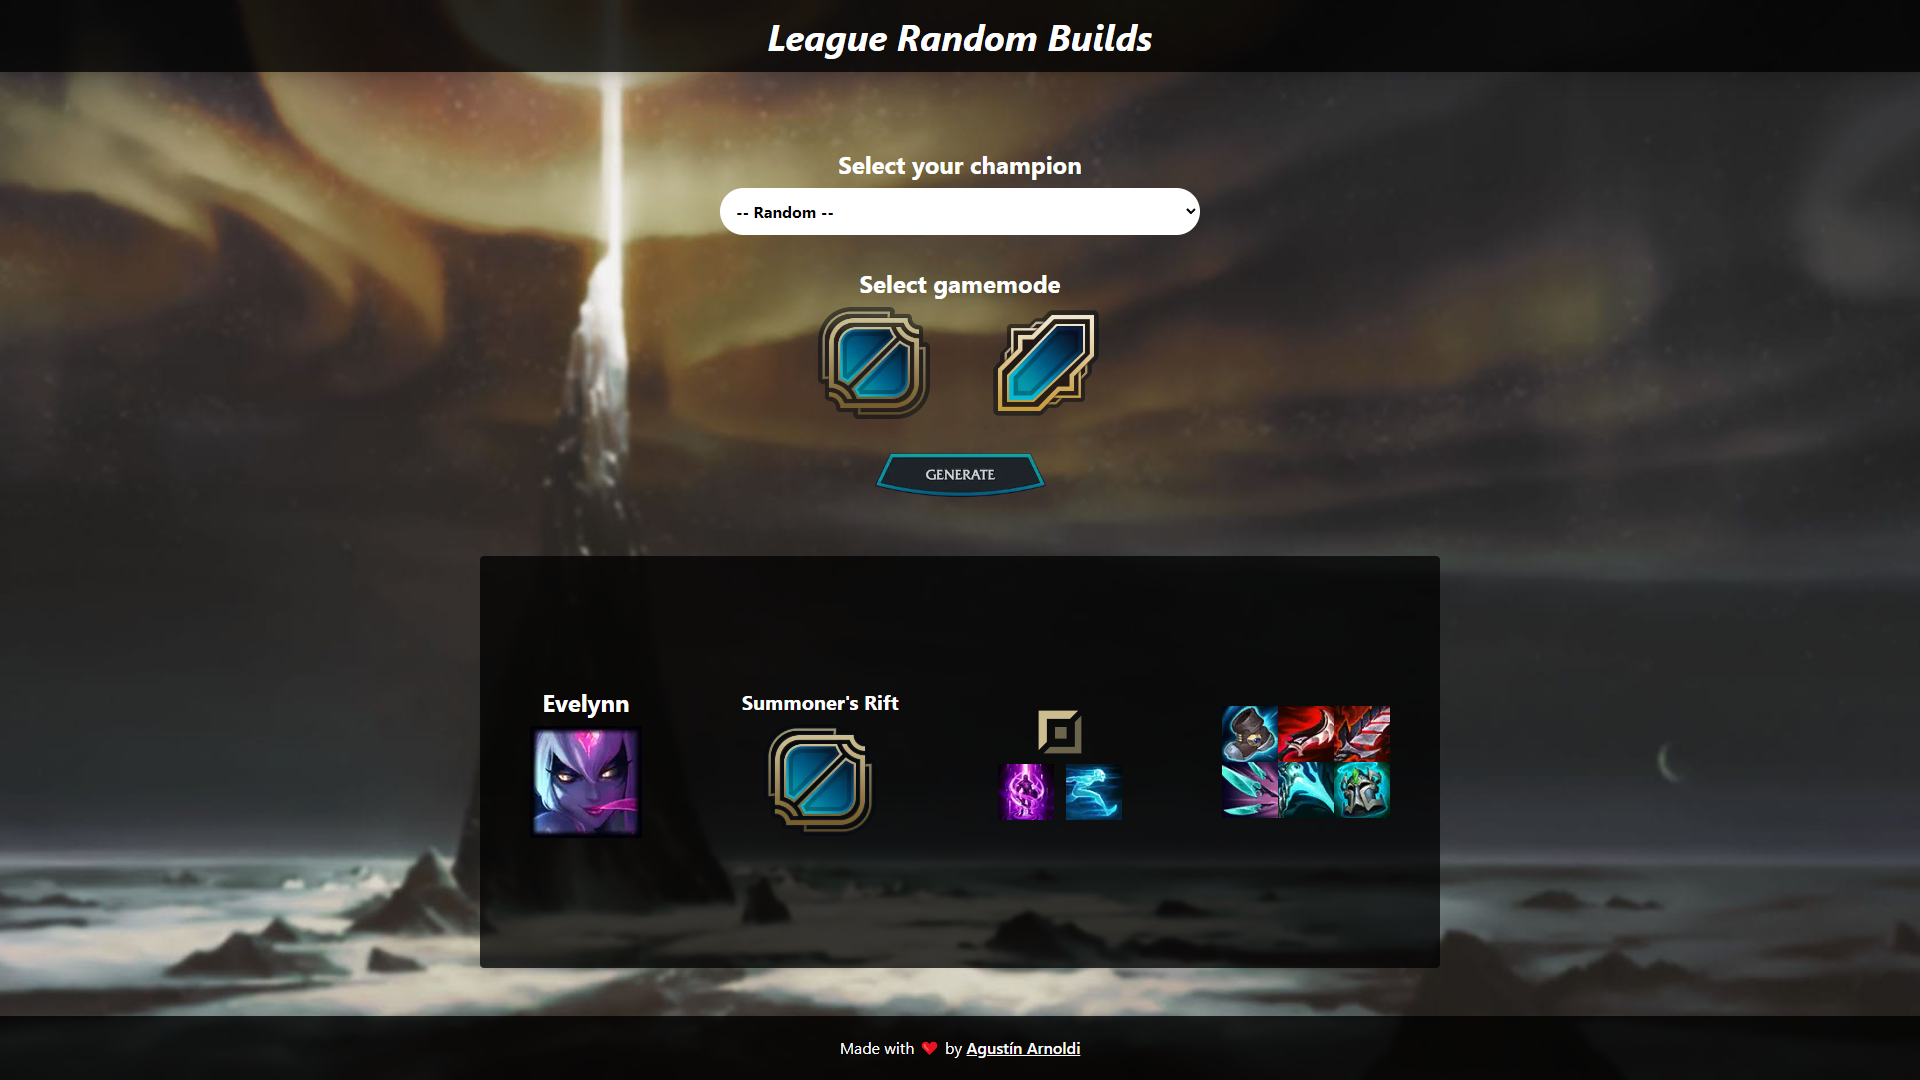 Application that draws a random League of Legends build